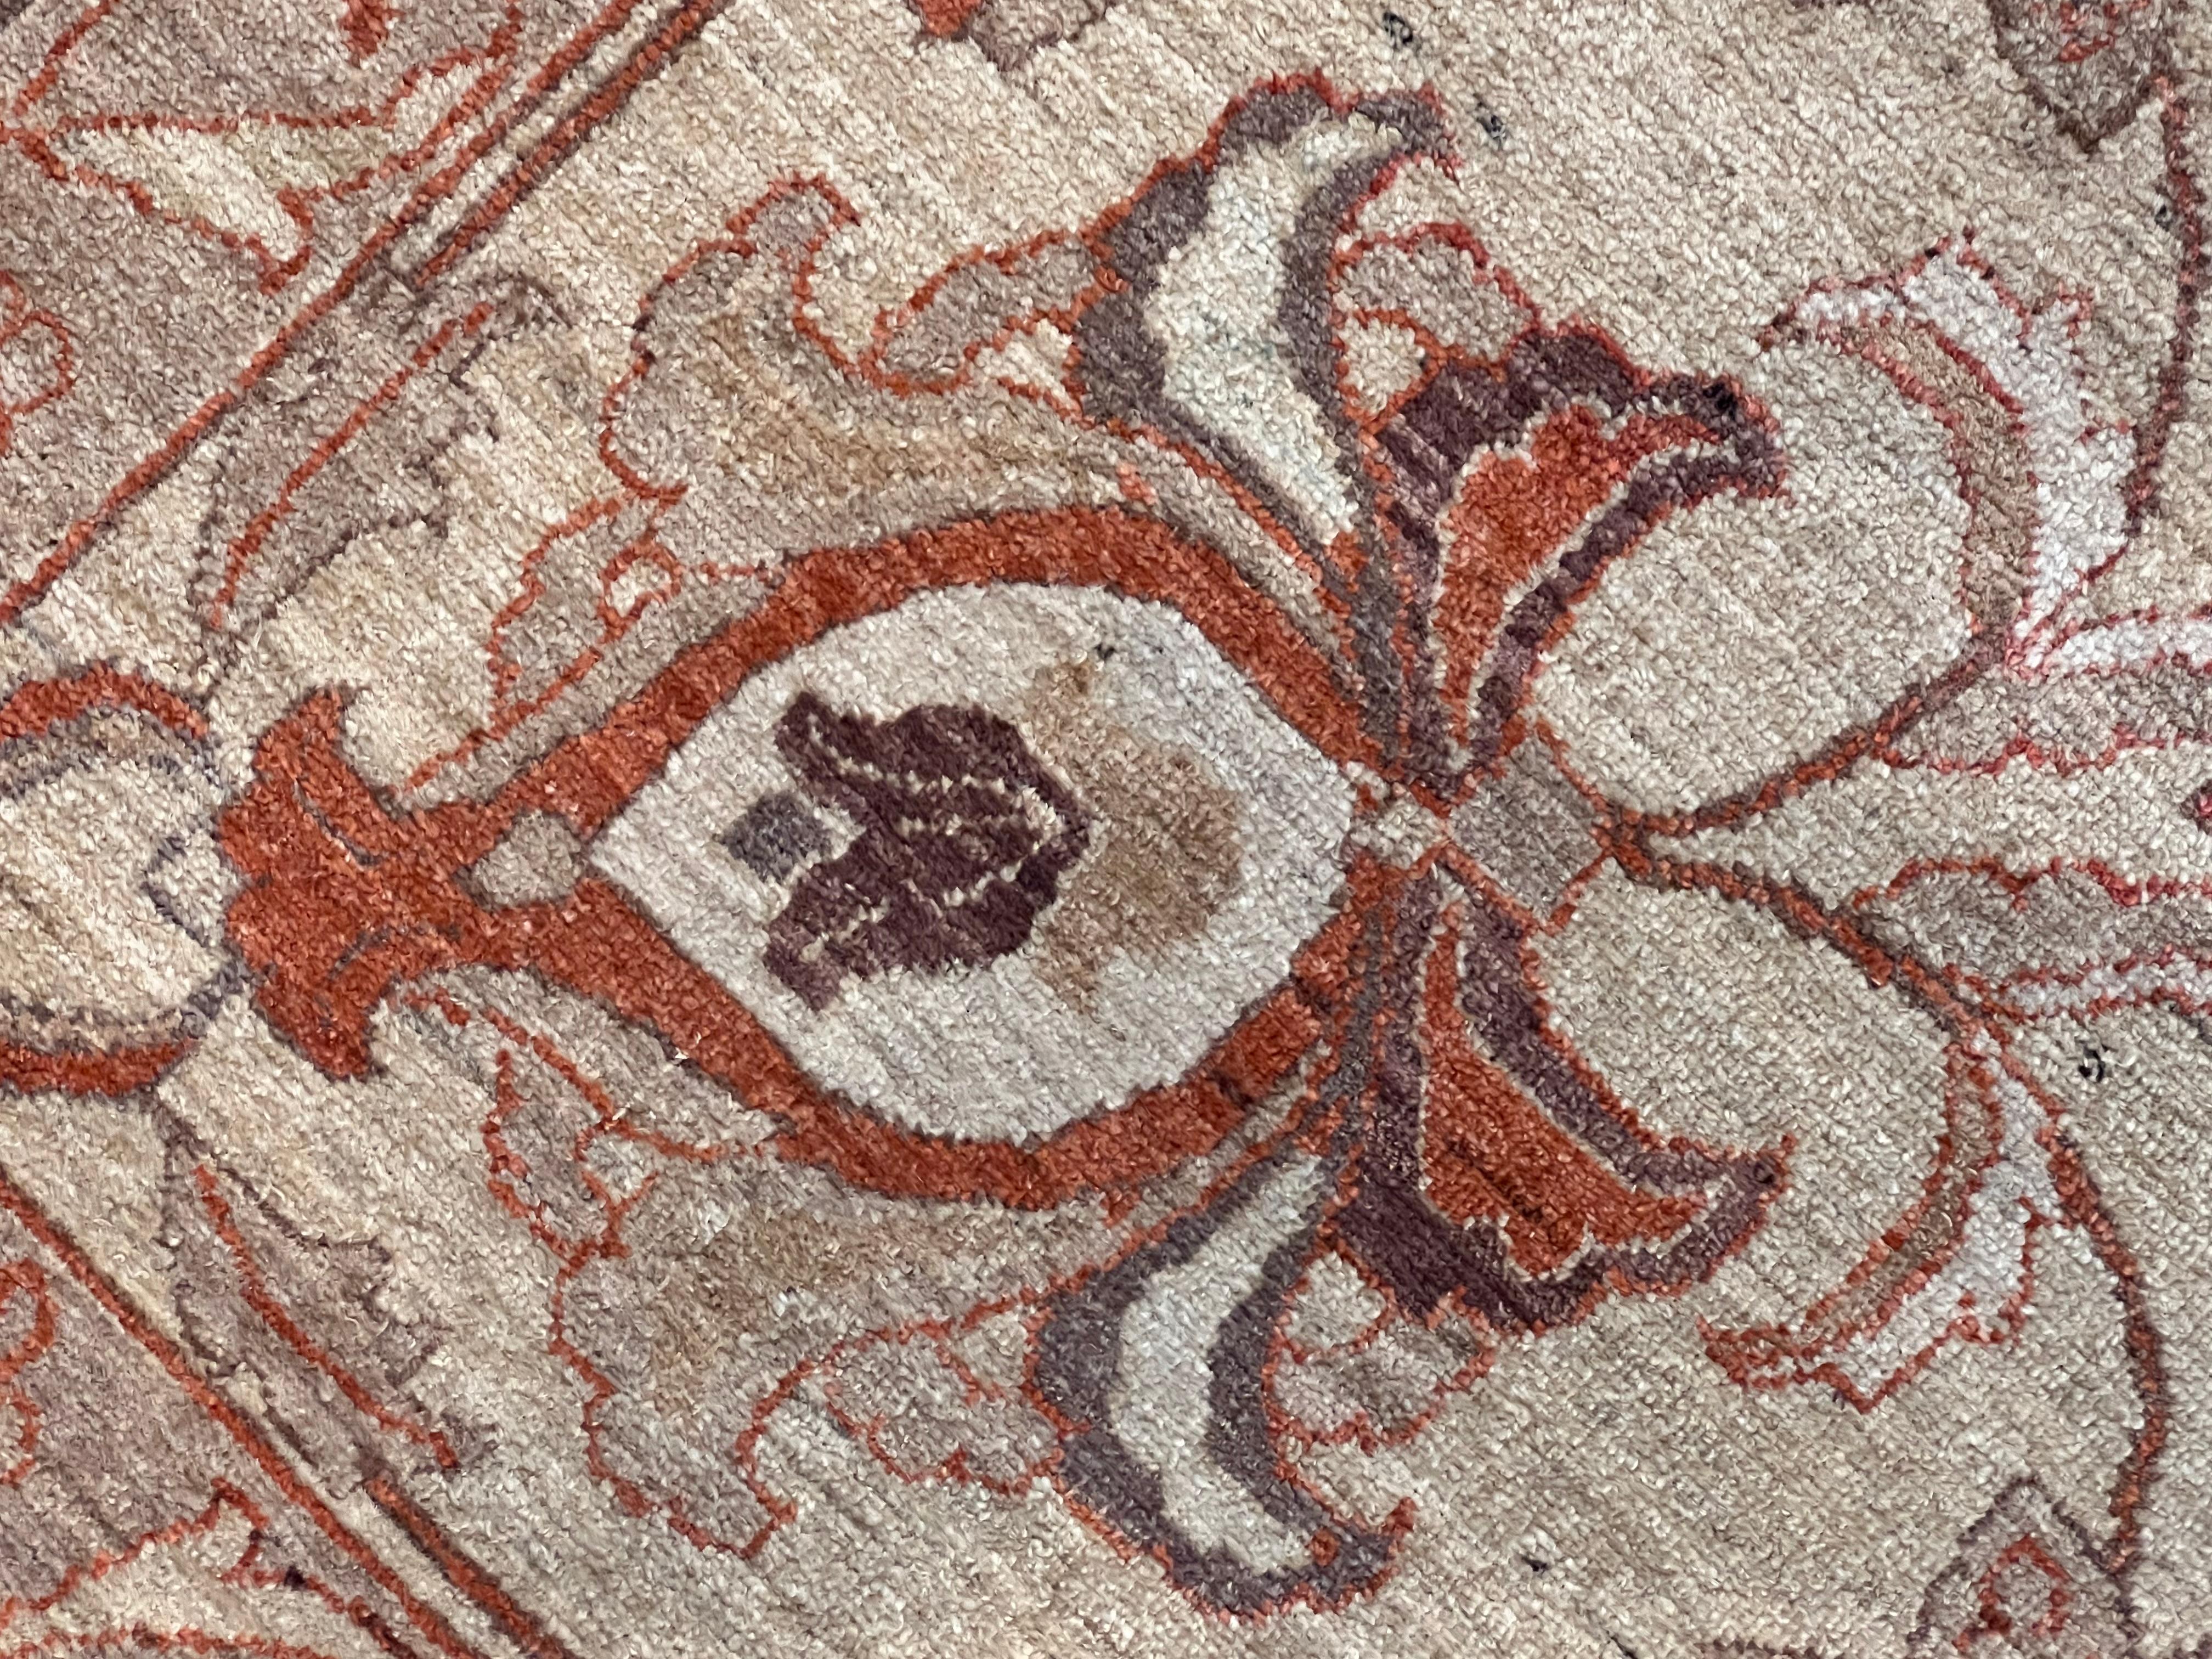 Le tapis que nous présentons est un tapis au motif classique d'Agra. Ces tapis étaient autrefois fabriqués dans les ateliers des cours indiennes pour décorer les résidences aristocratiques. Aujourd'hui, la meilleure production d'Agra provient du